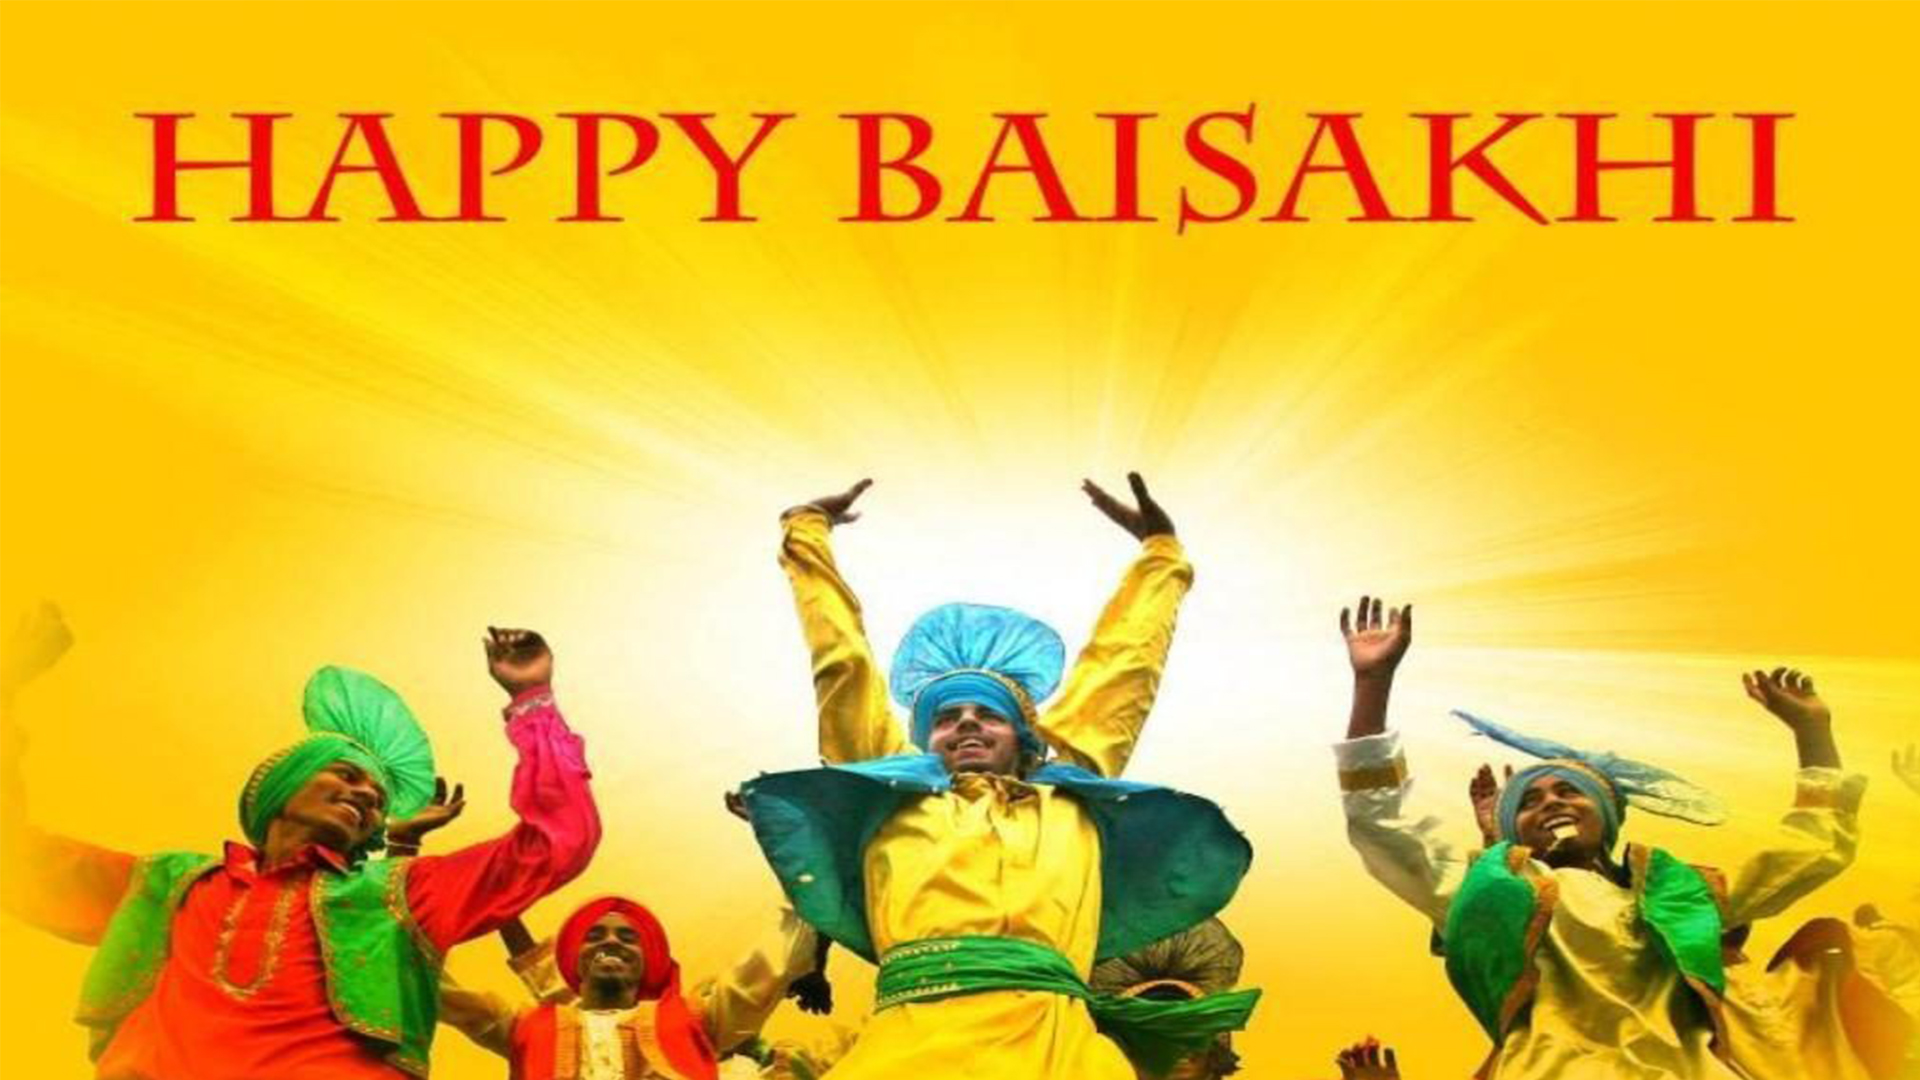 happy baisakhi images 2018